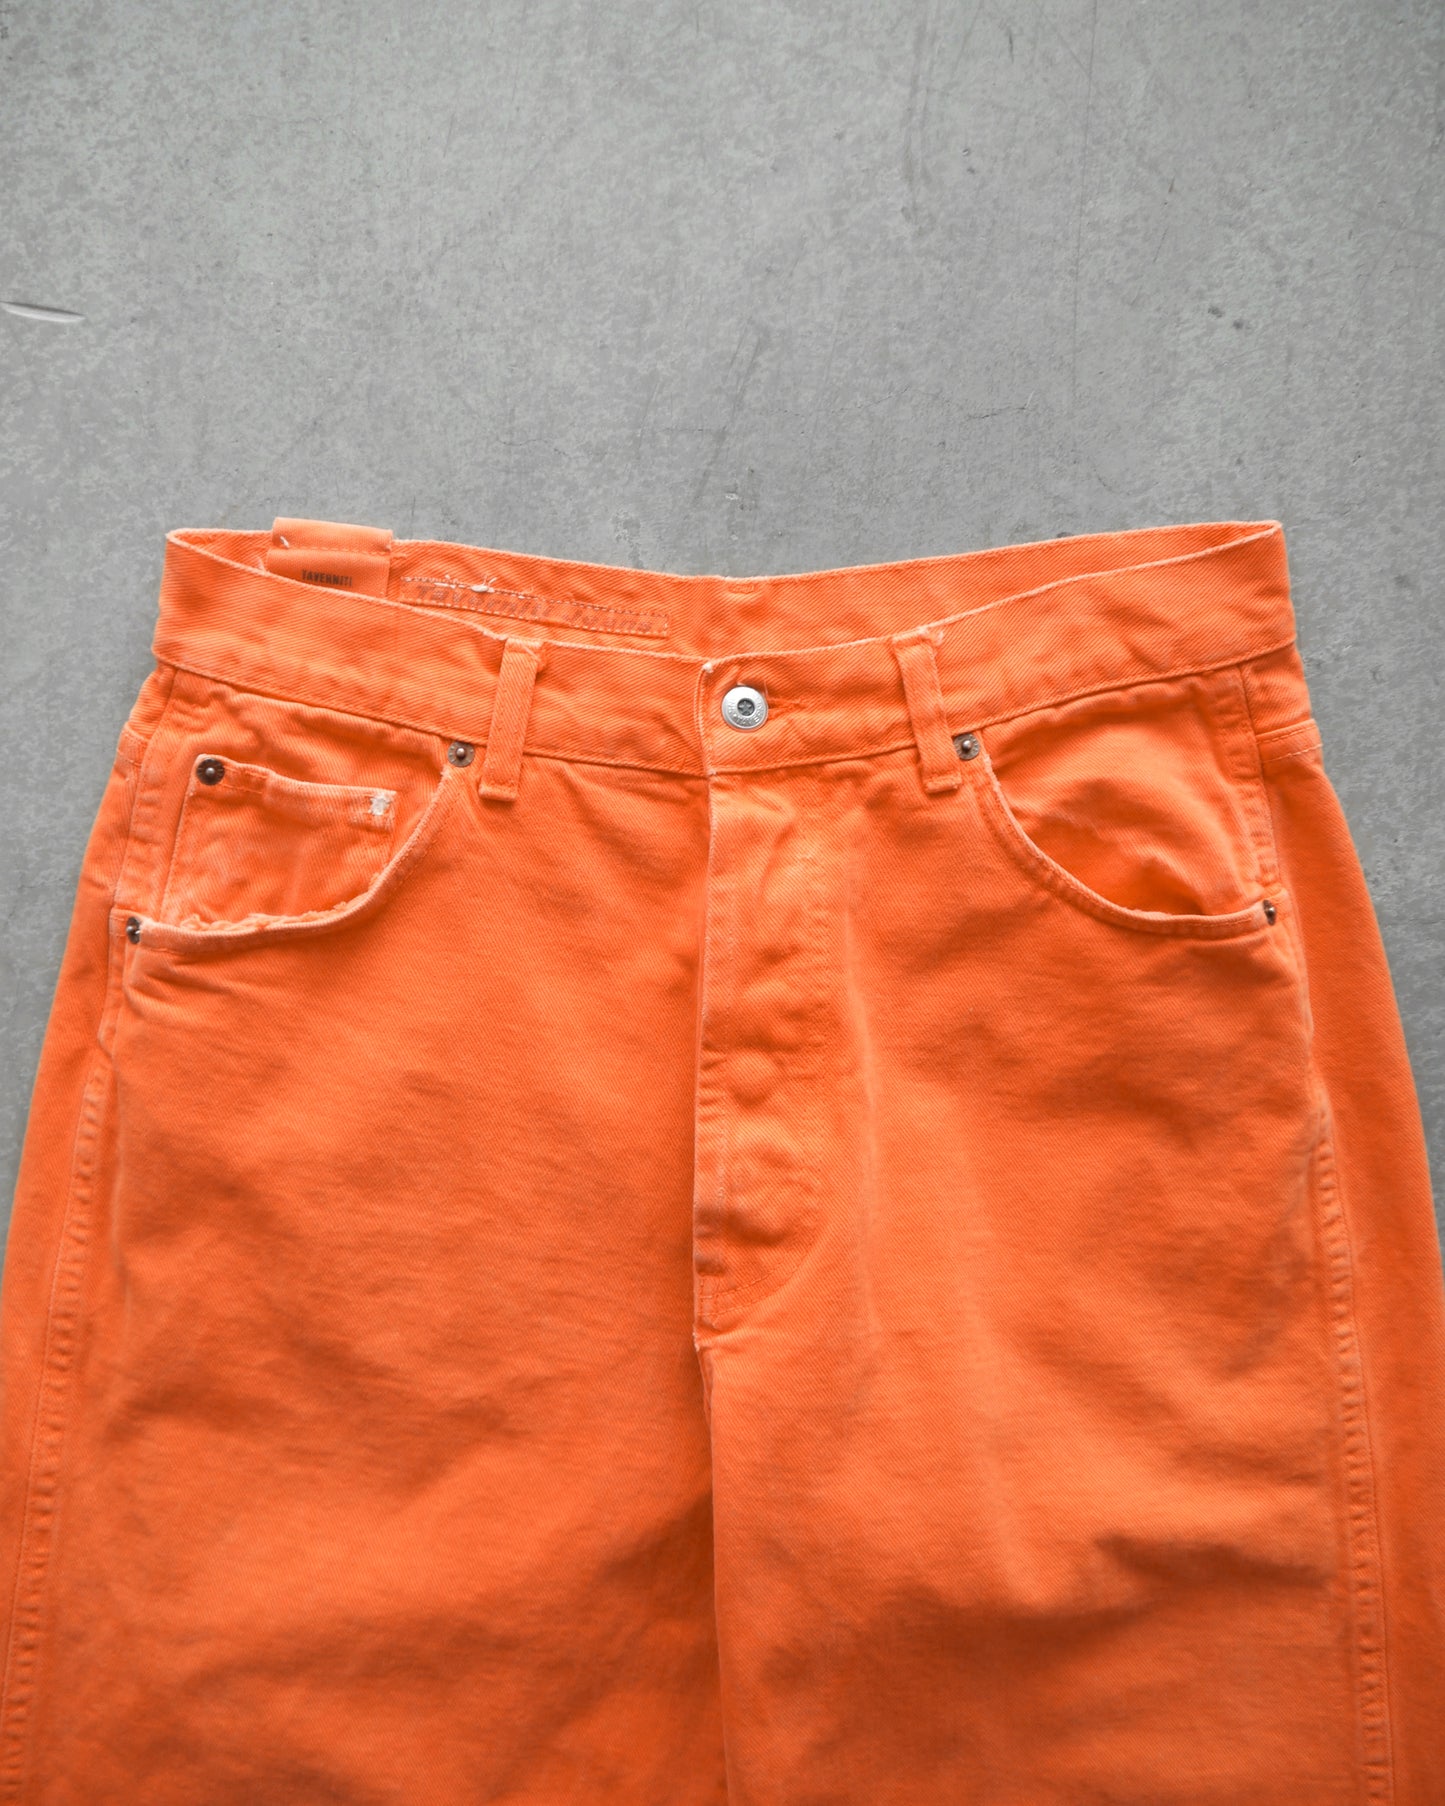 90s Prison Orange Italian Denim Jeans (32x32)